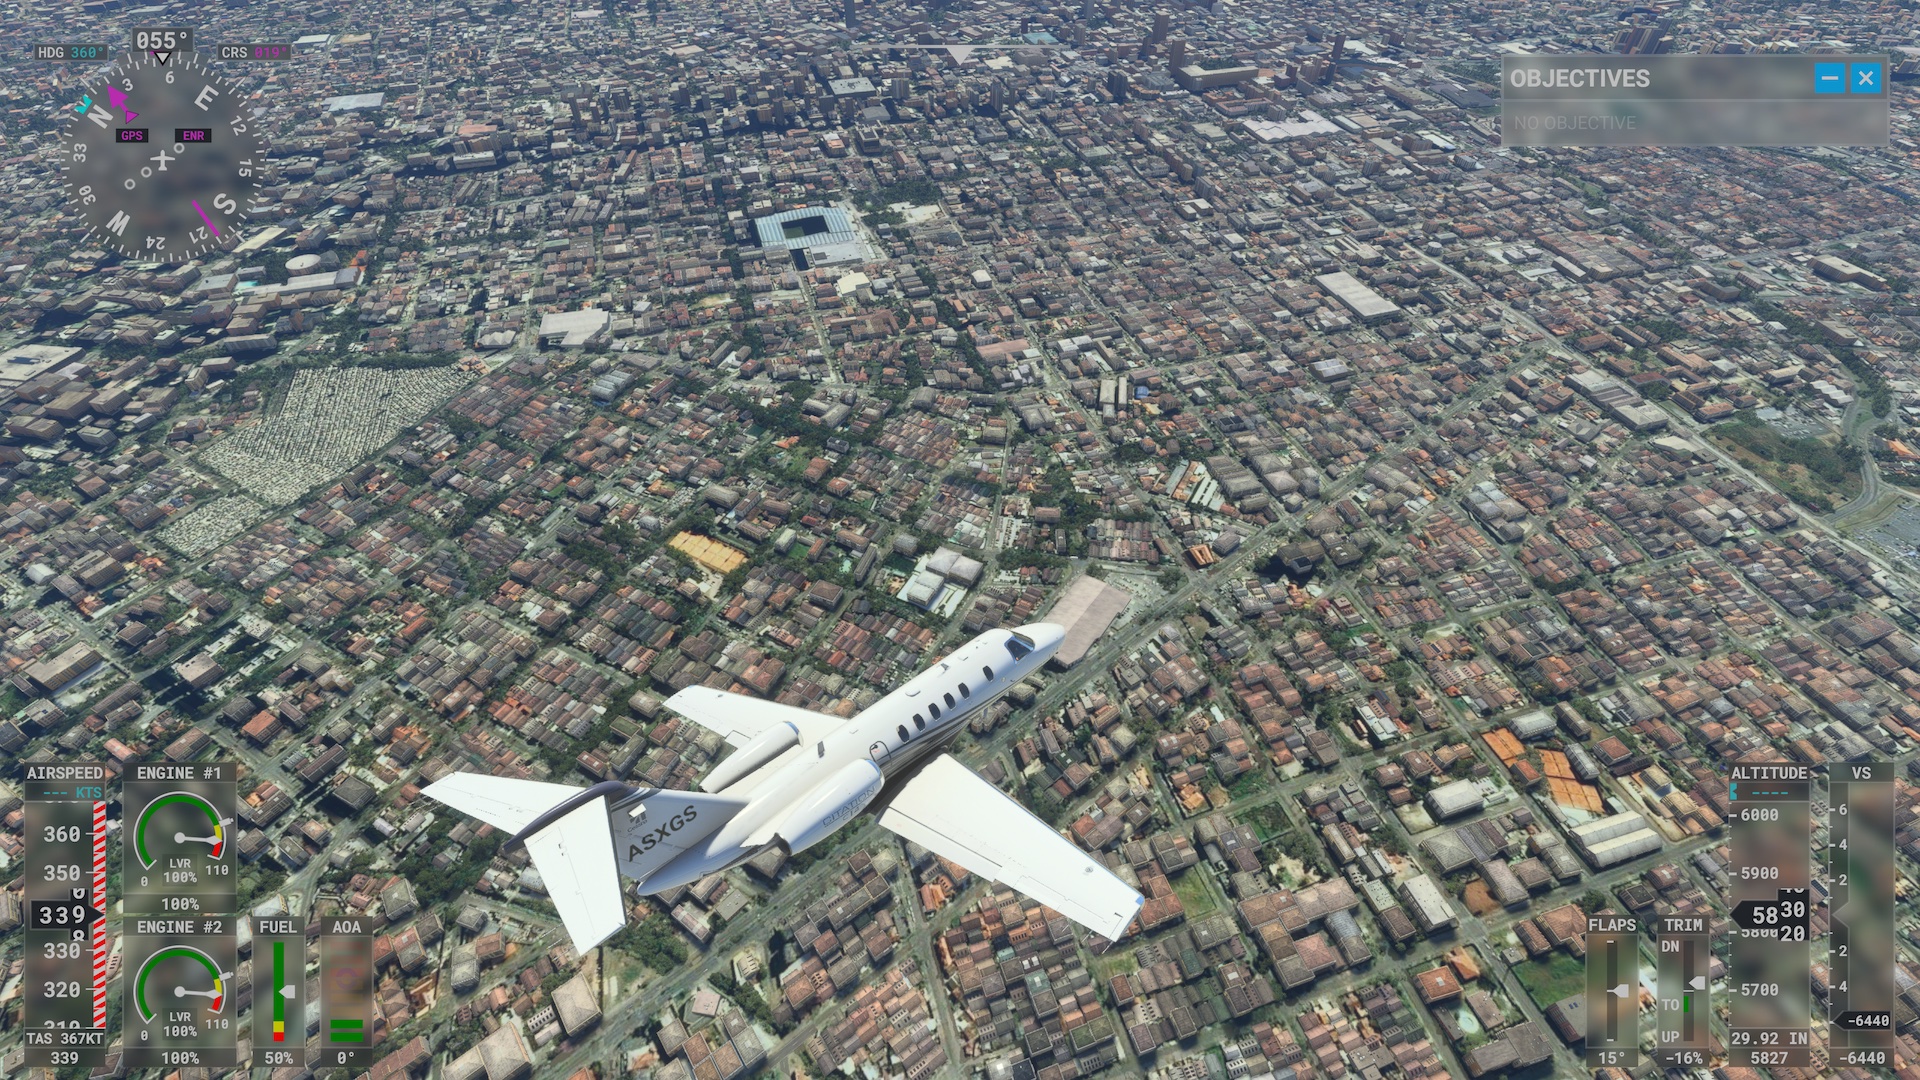 O que a Microsoft fez para o Flight Simulator parecer tão real